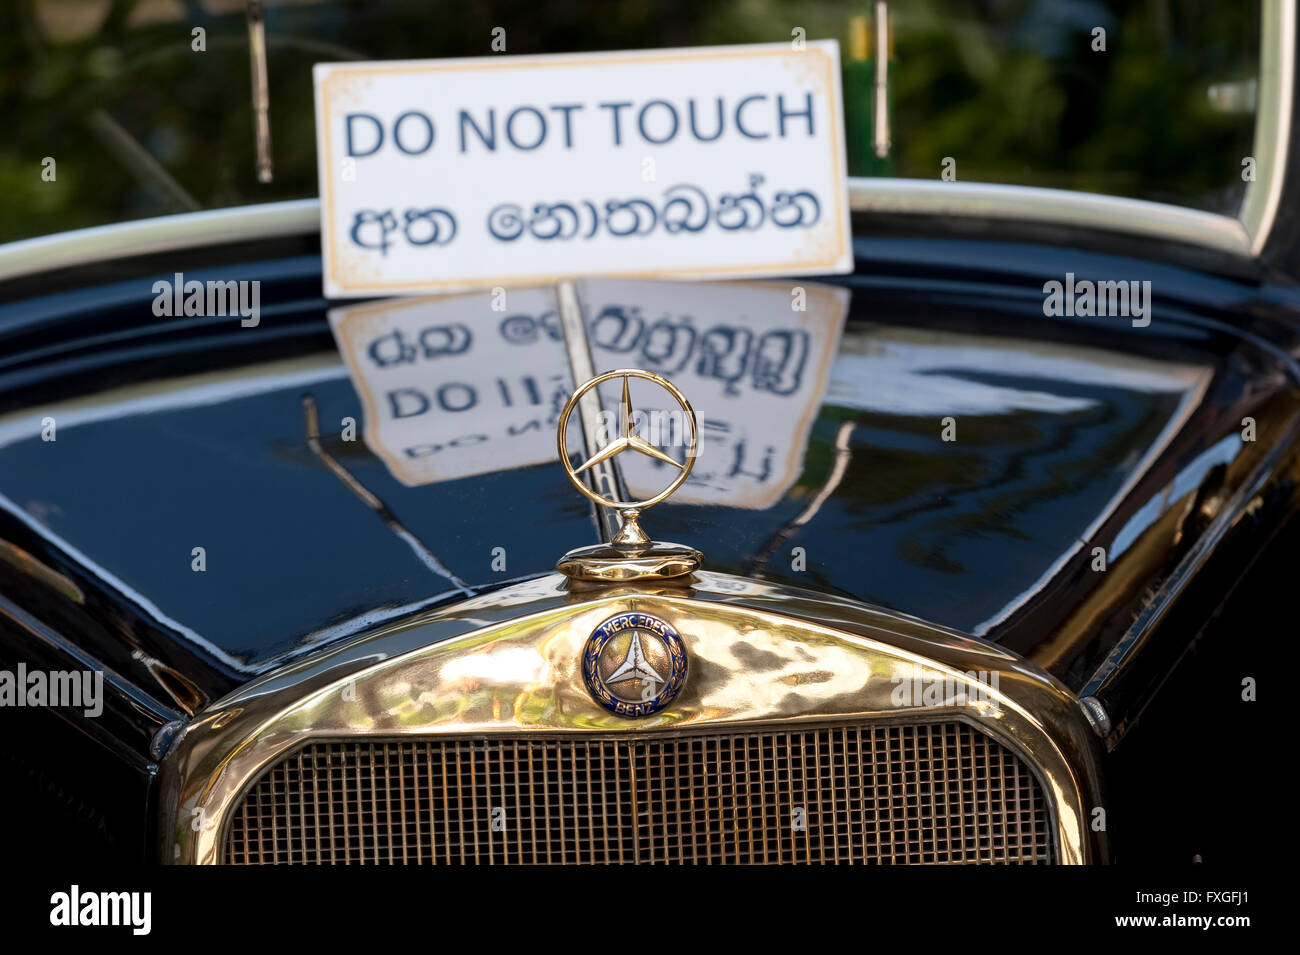 Sri Lanka, Colombo, vintage car, Mercedes Benz Banque D'Images